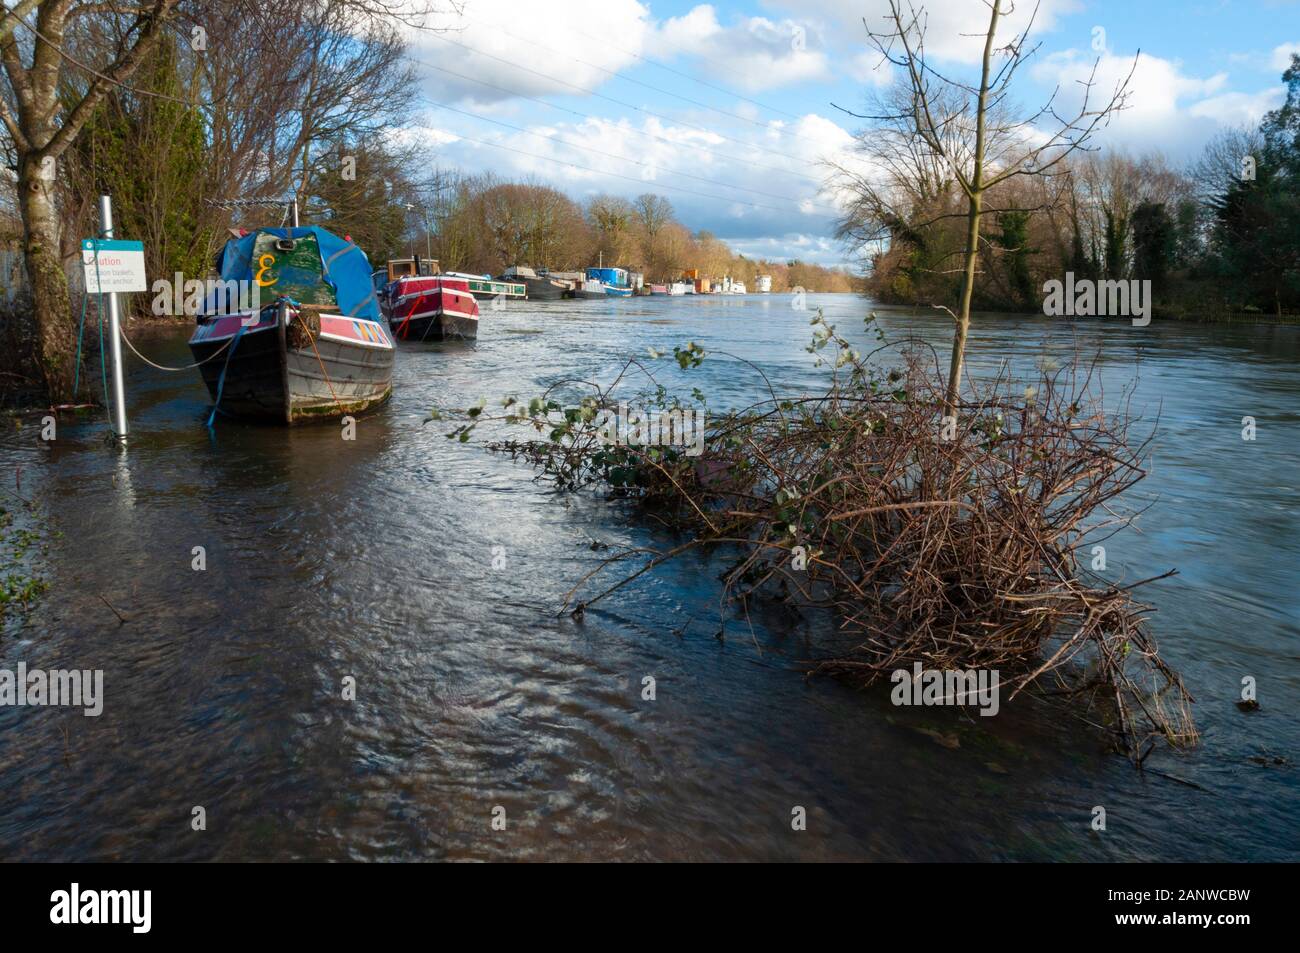 CHERTSEY, Reino Unido - 20 Feb 2014 - después de las graves inundaciones del río Támesis burst es bancos en la parte superior alcanza cerca de Chertsey Surrey, Inglaterra Foto de stock